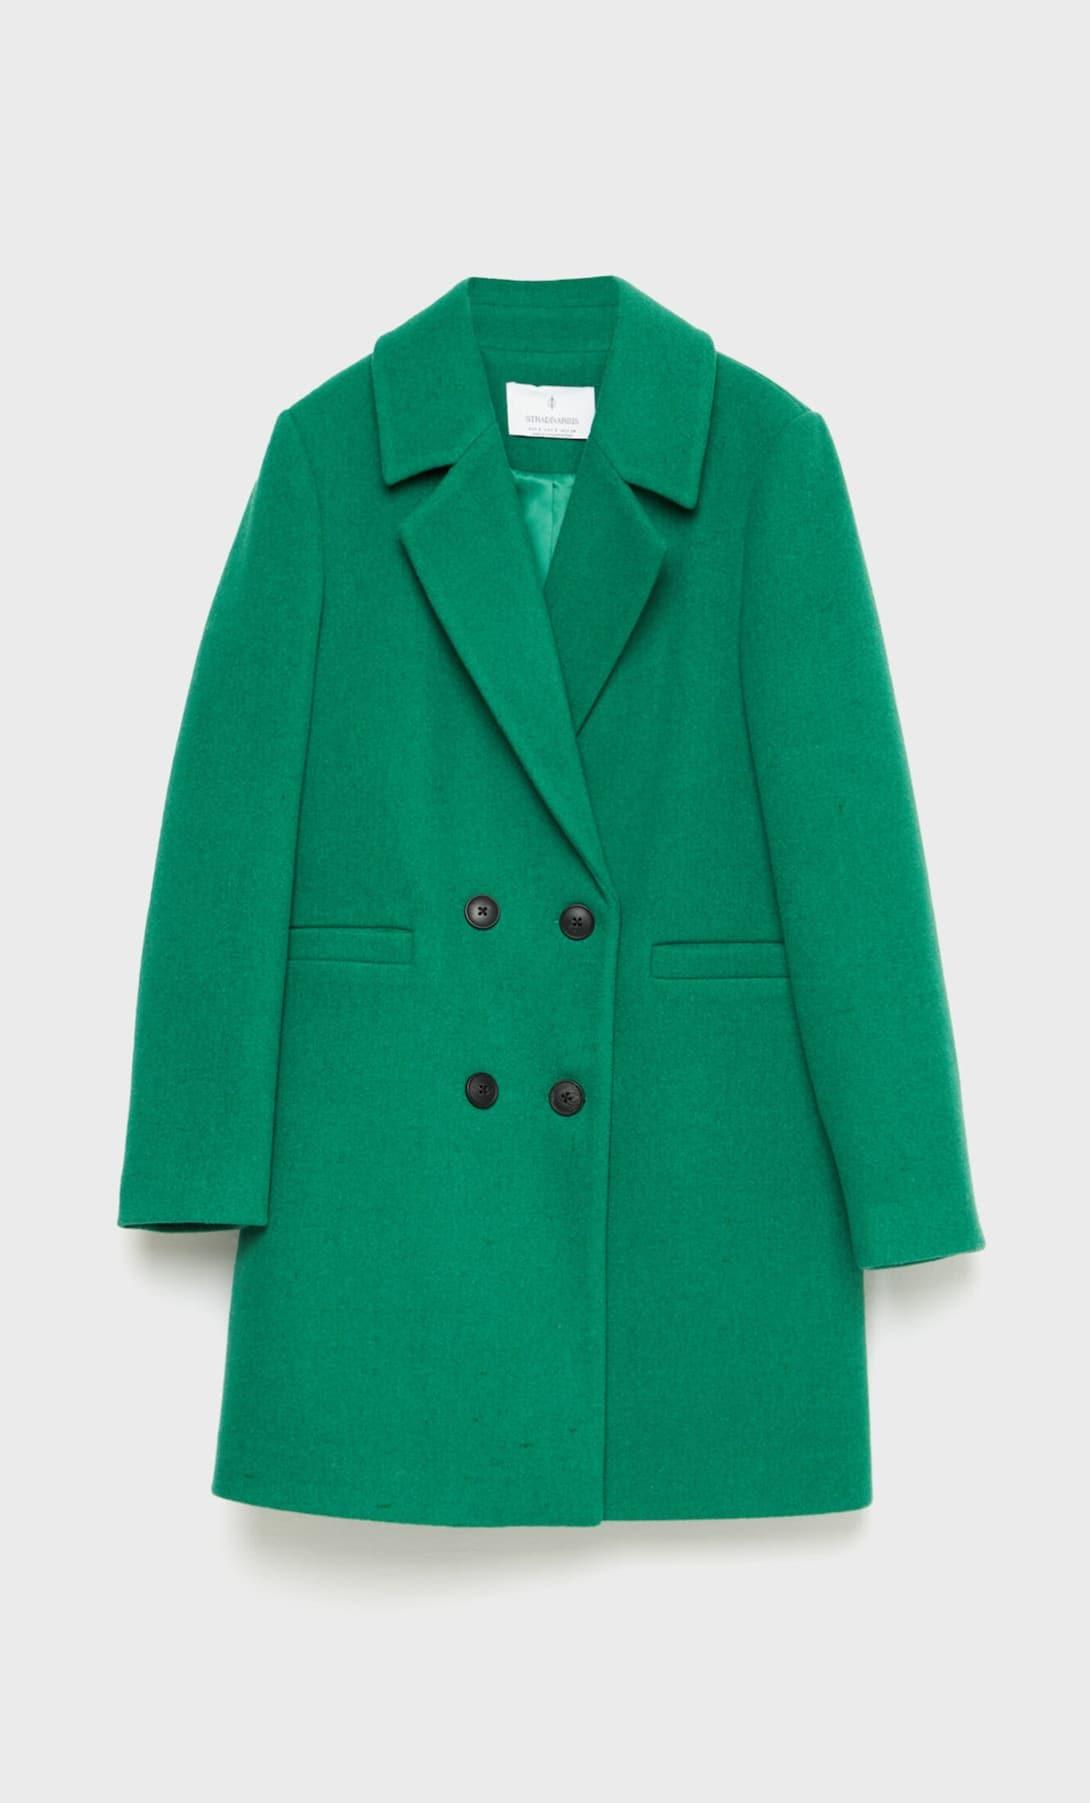 Winning in winter is easy with Zara's new coat